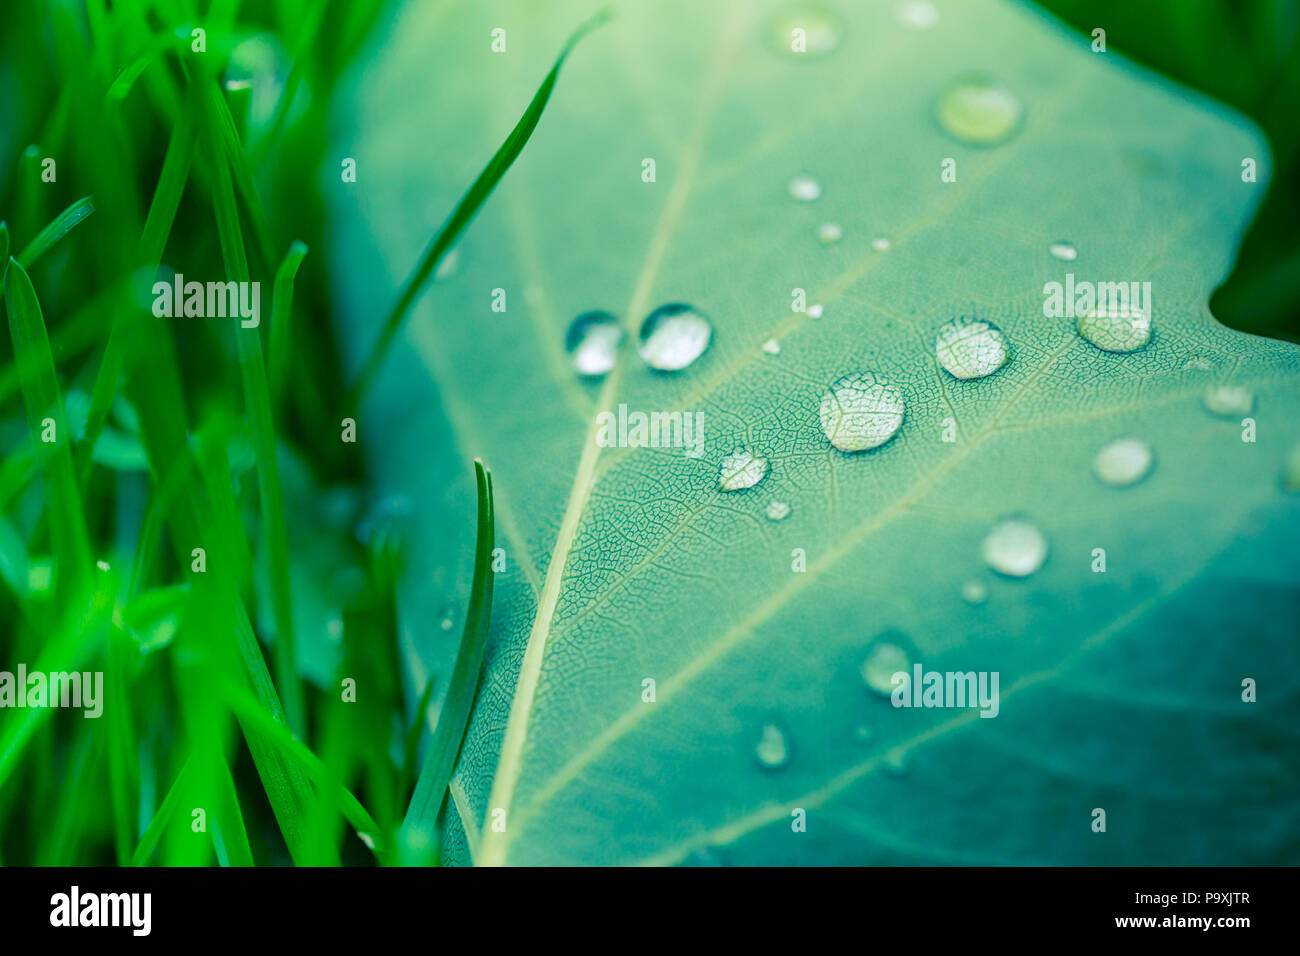 Schöne Tropfen transparent regen Wasser auf einem grünen Blatt Makro. Tautropfen am Morgen leuchten in der Sonne. Schöne Blatt Textur in der Natur Stockfoto